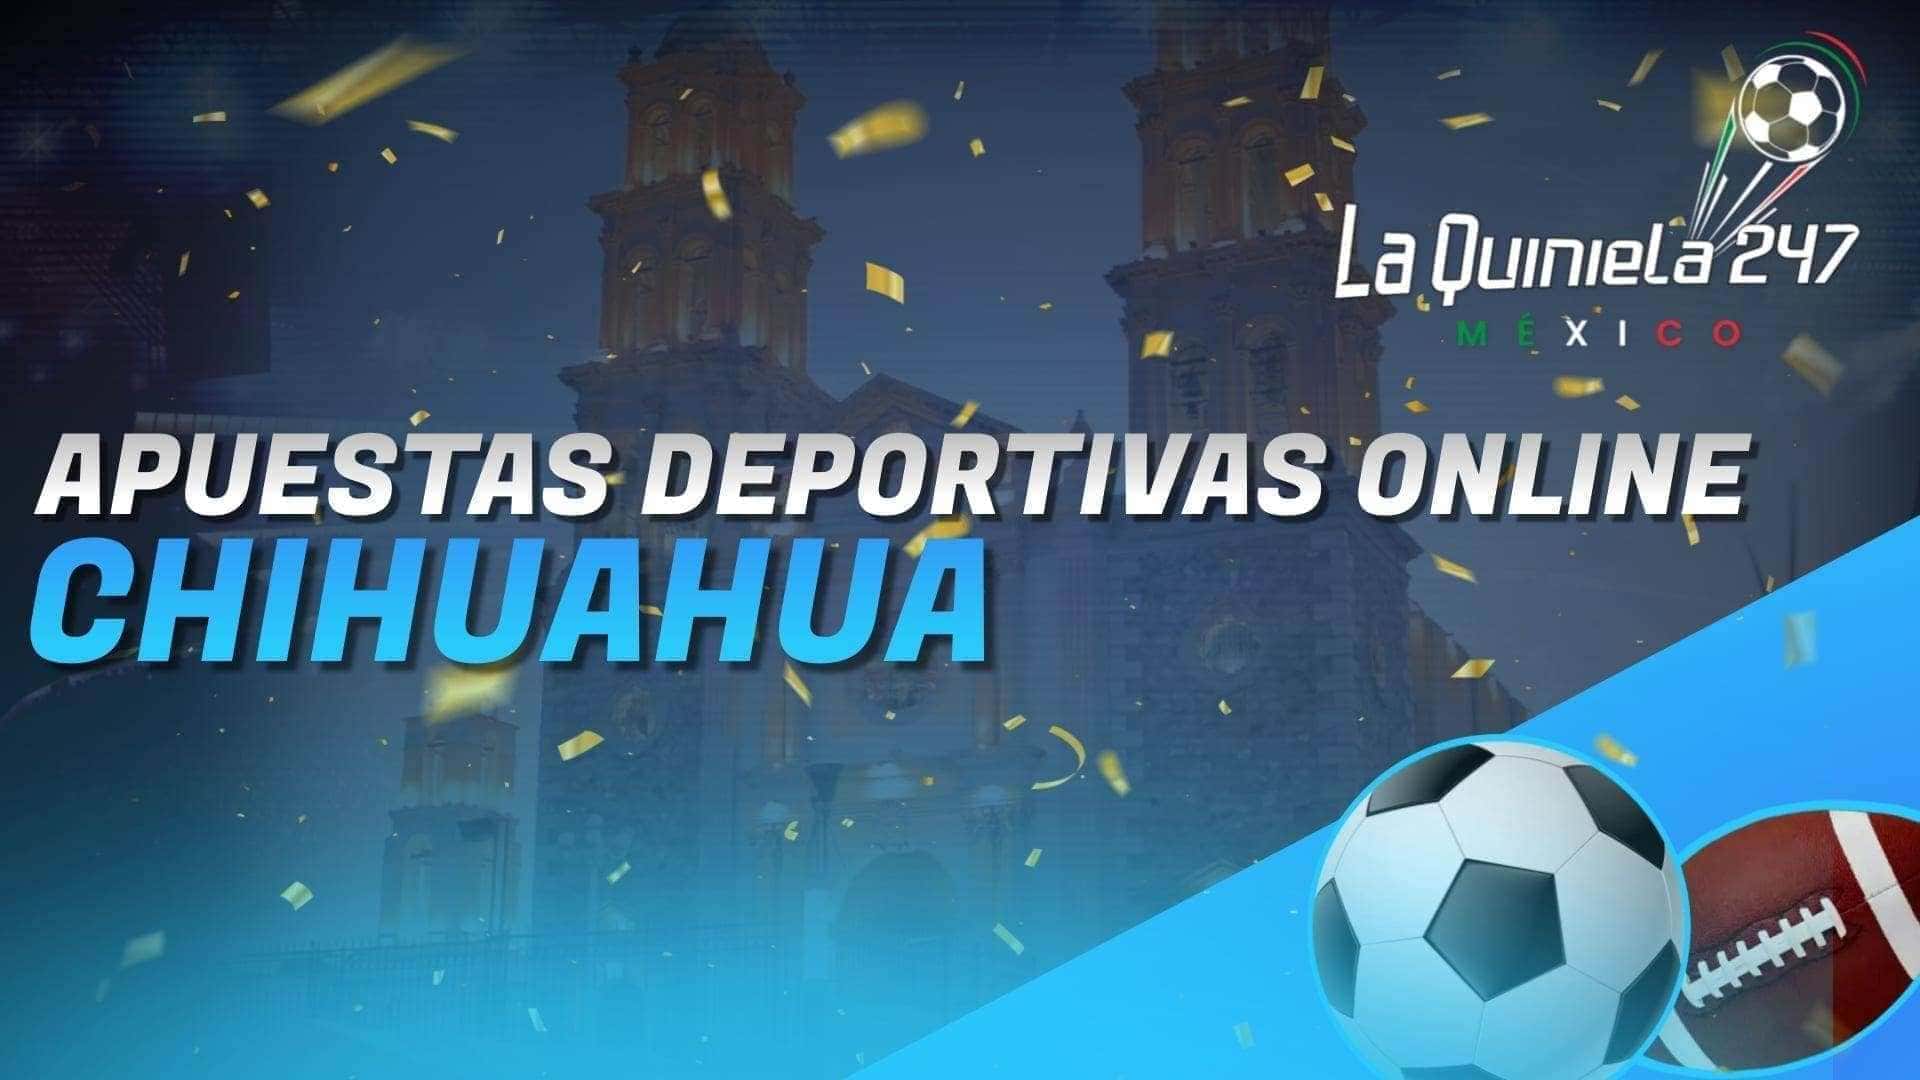 En Apuestas Deportivas Online Chihuahua